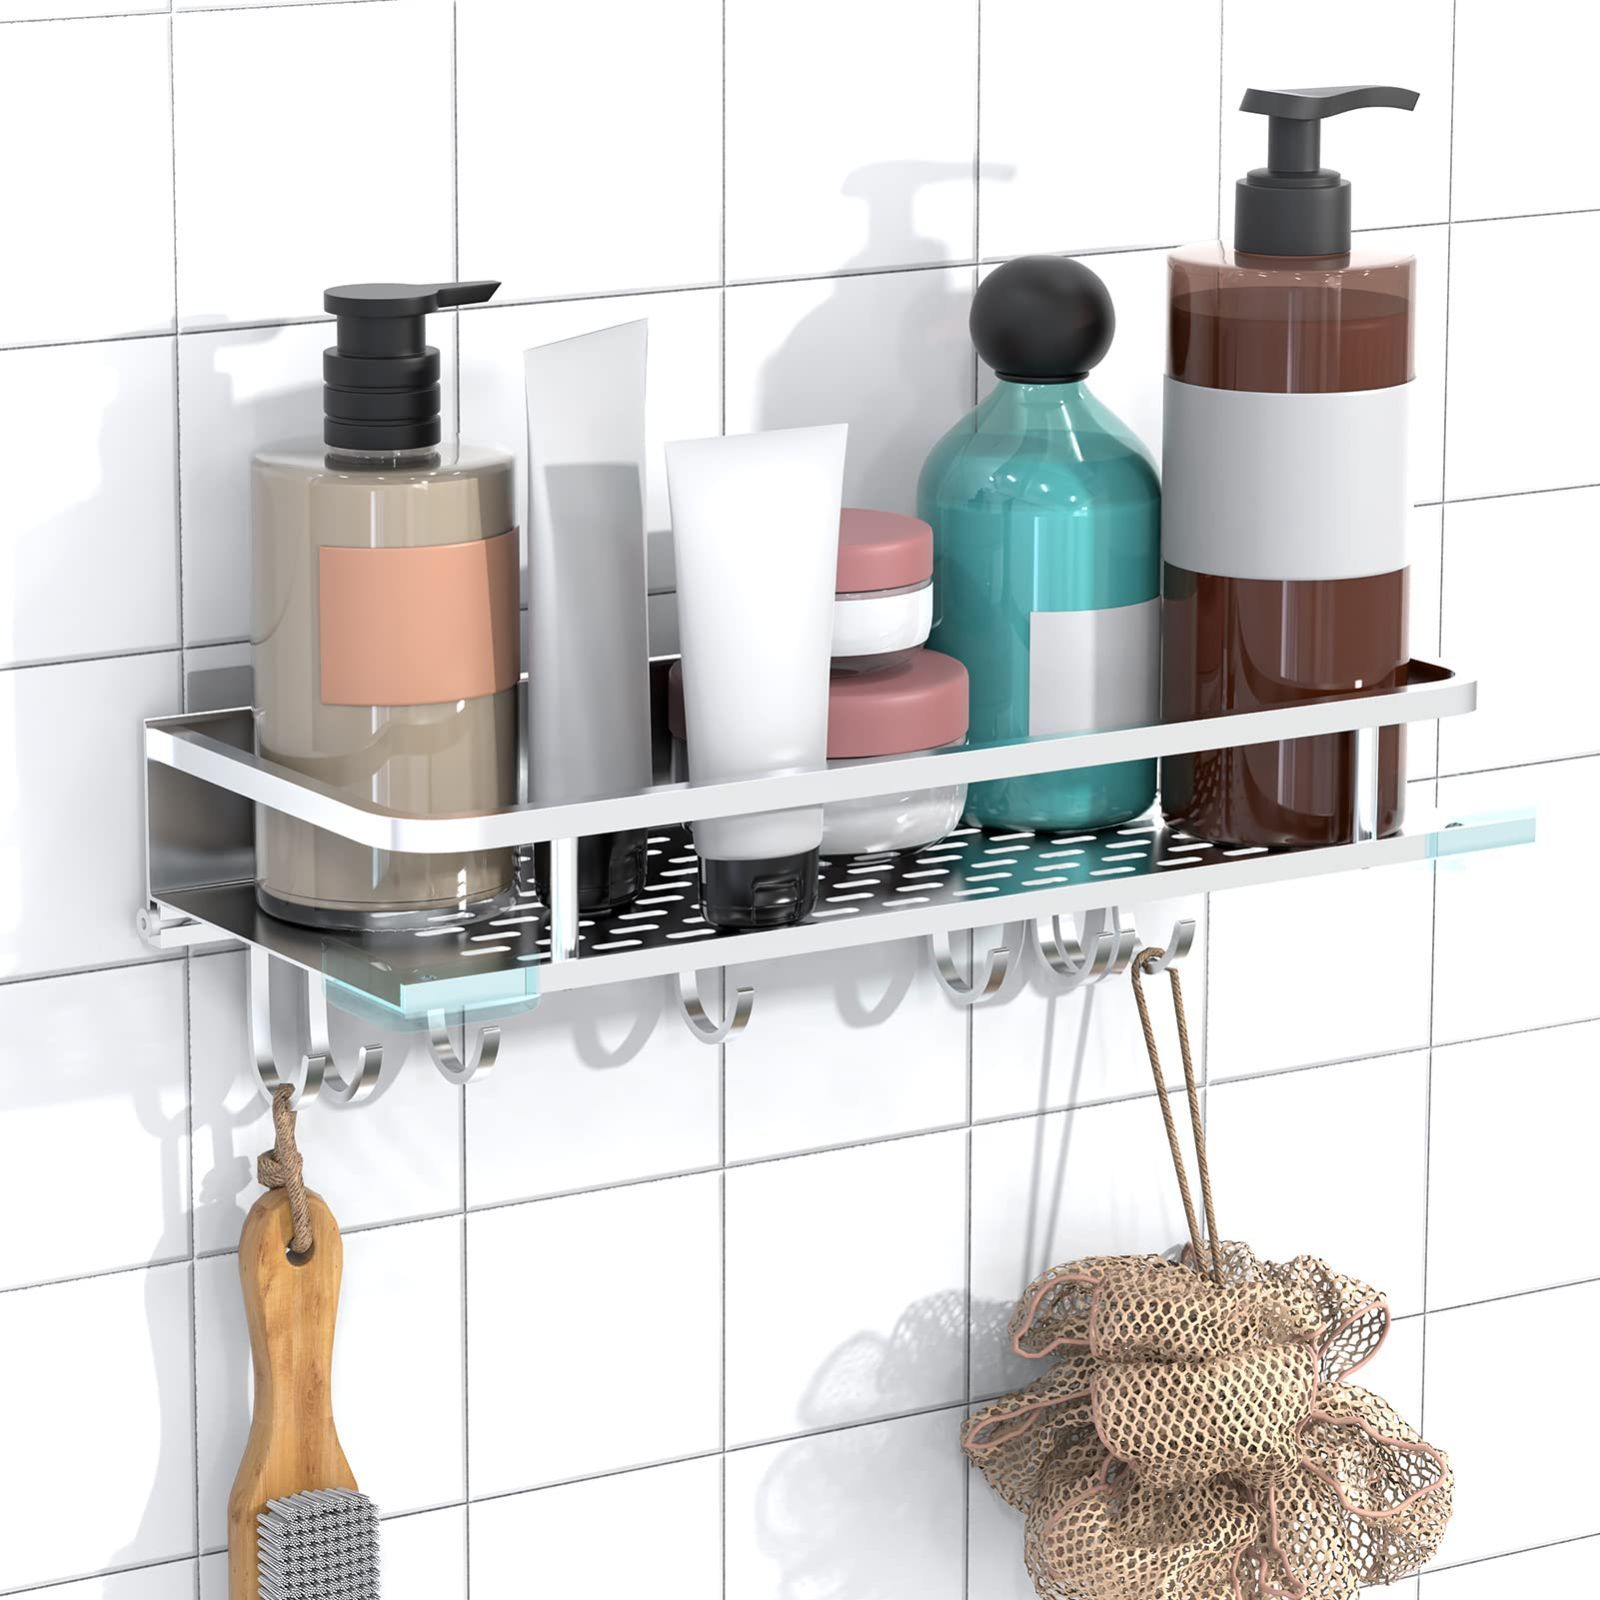 【新着商品】浴室ラックシャワーラック強力粘着固定お風呂の壁に 風呂場 ラック 風